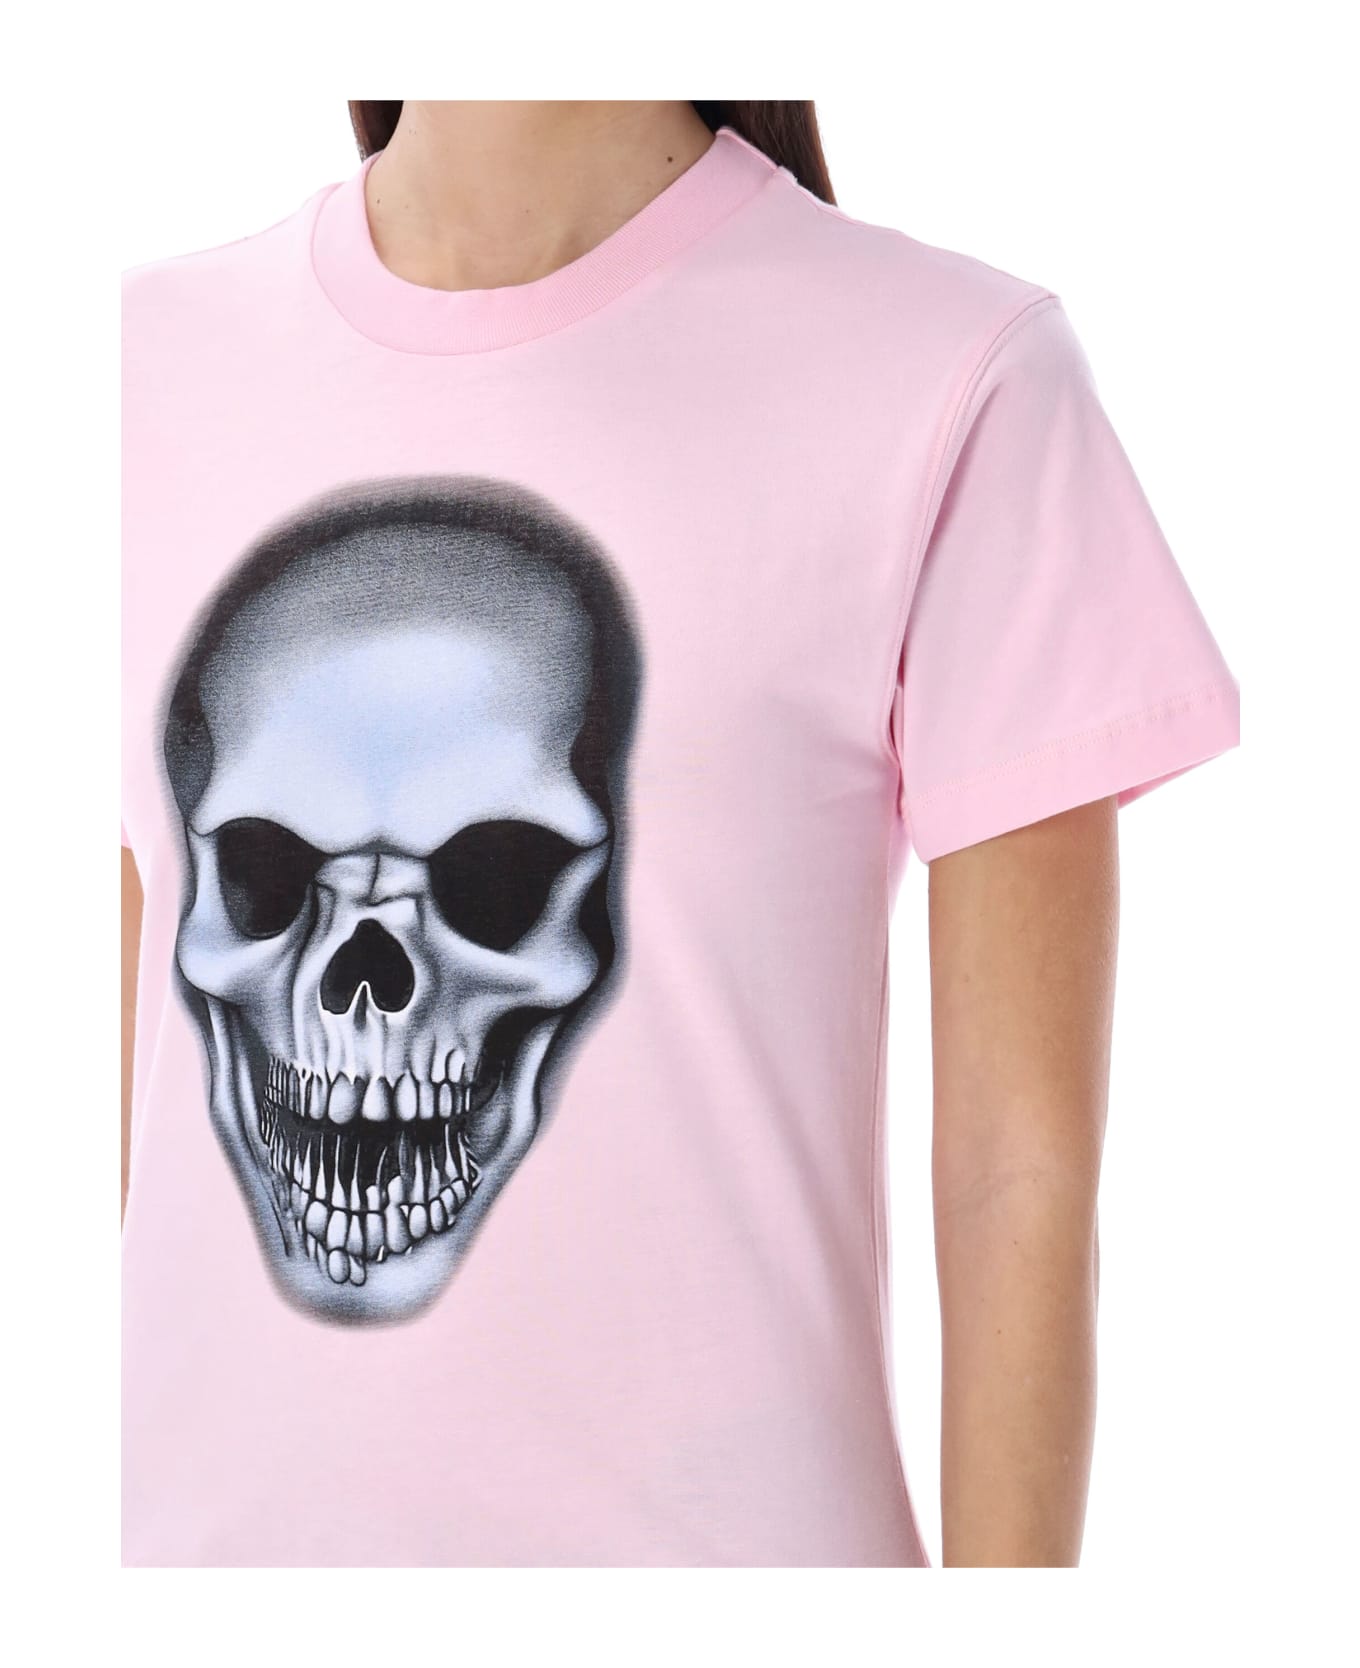 Ottolinger Skull T-shirt - LIGHT PINK Tシャツ